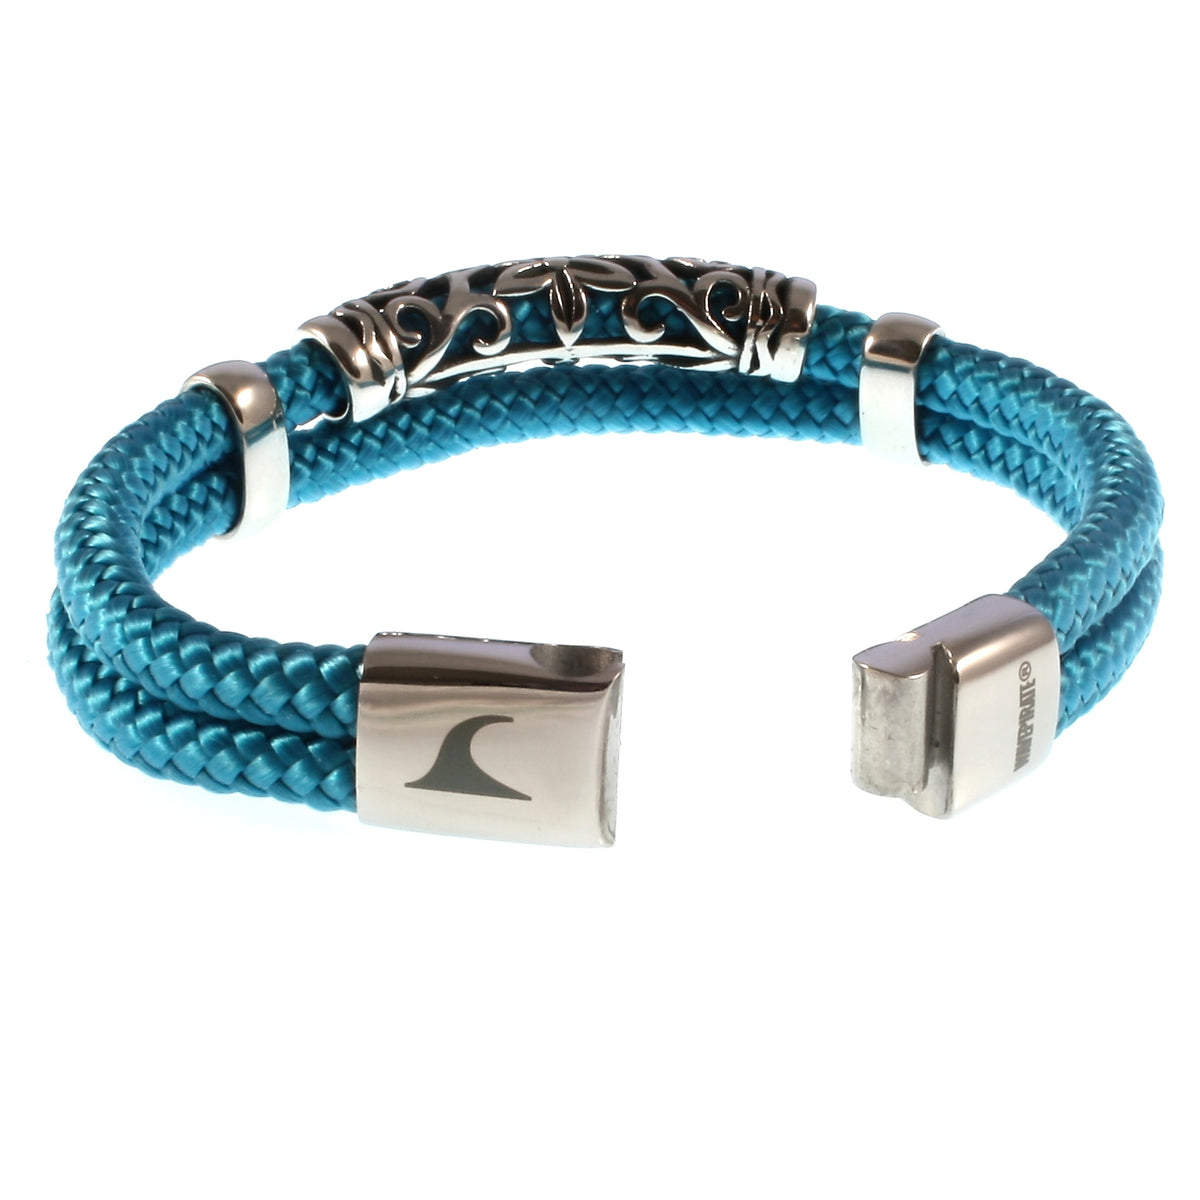 Herren-Segeltau-Armband-xo-blau-geflochten-Edelstahlverschluss-offen-wavepirate-shop-st